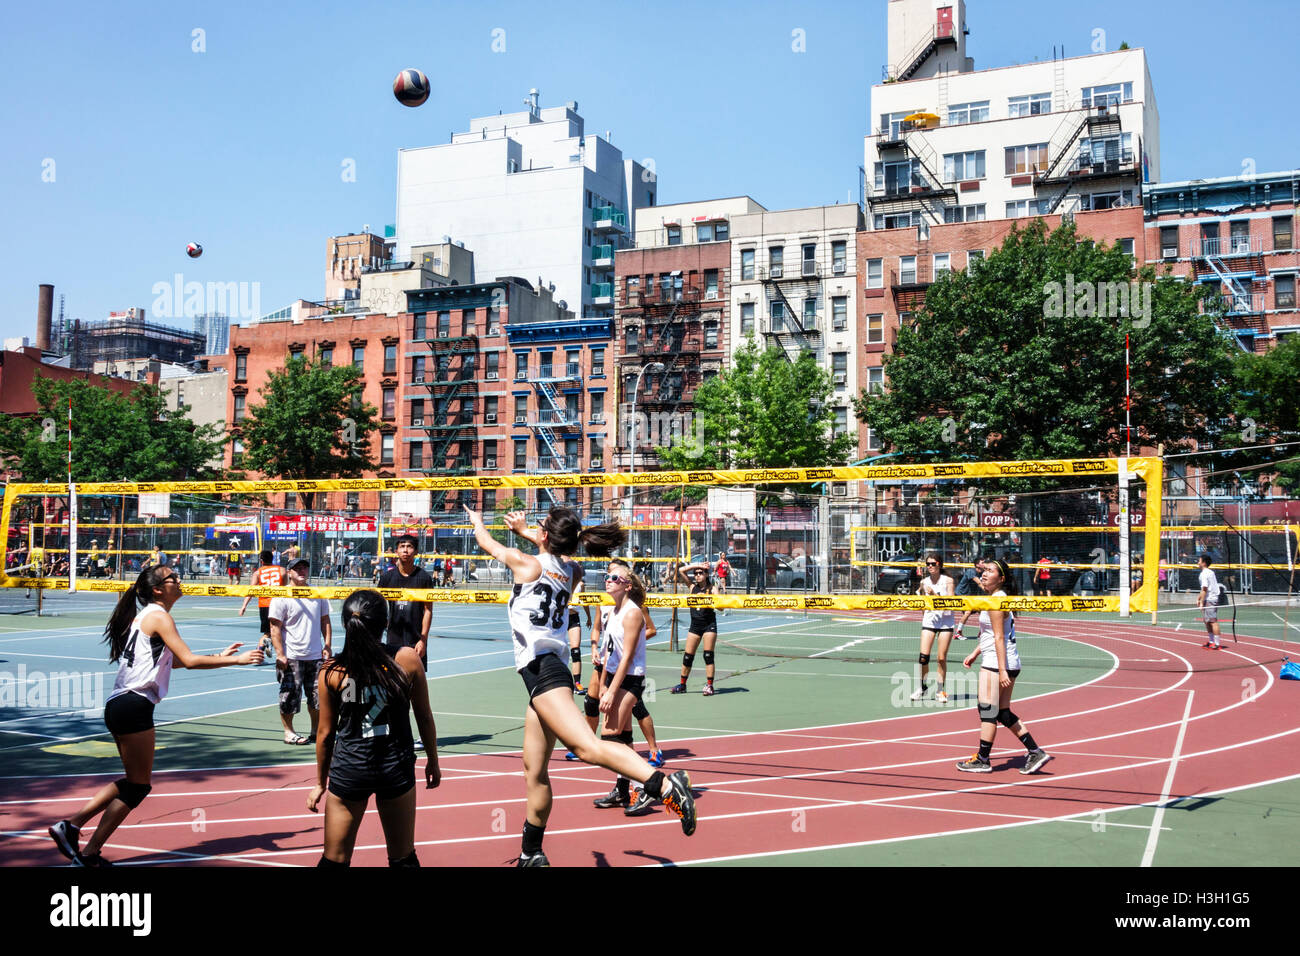 Nueva York, NY NYC Lower Manhattan, Chinatown, Seward Park, parque público, campo atlético, deportes recreativos, torneo de voleibol, voleibol, cancha, Foto de stock